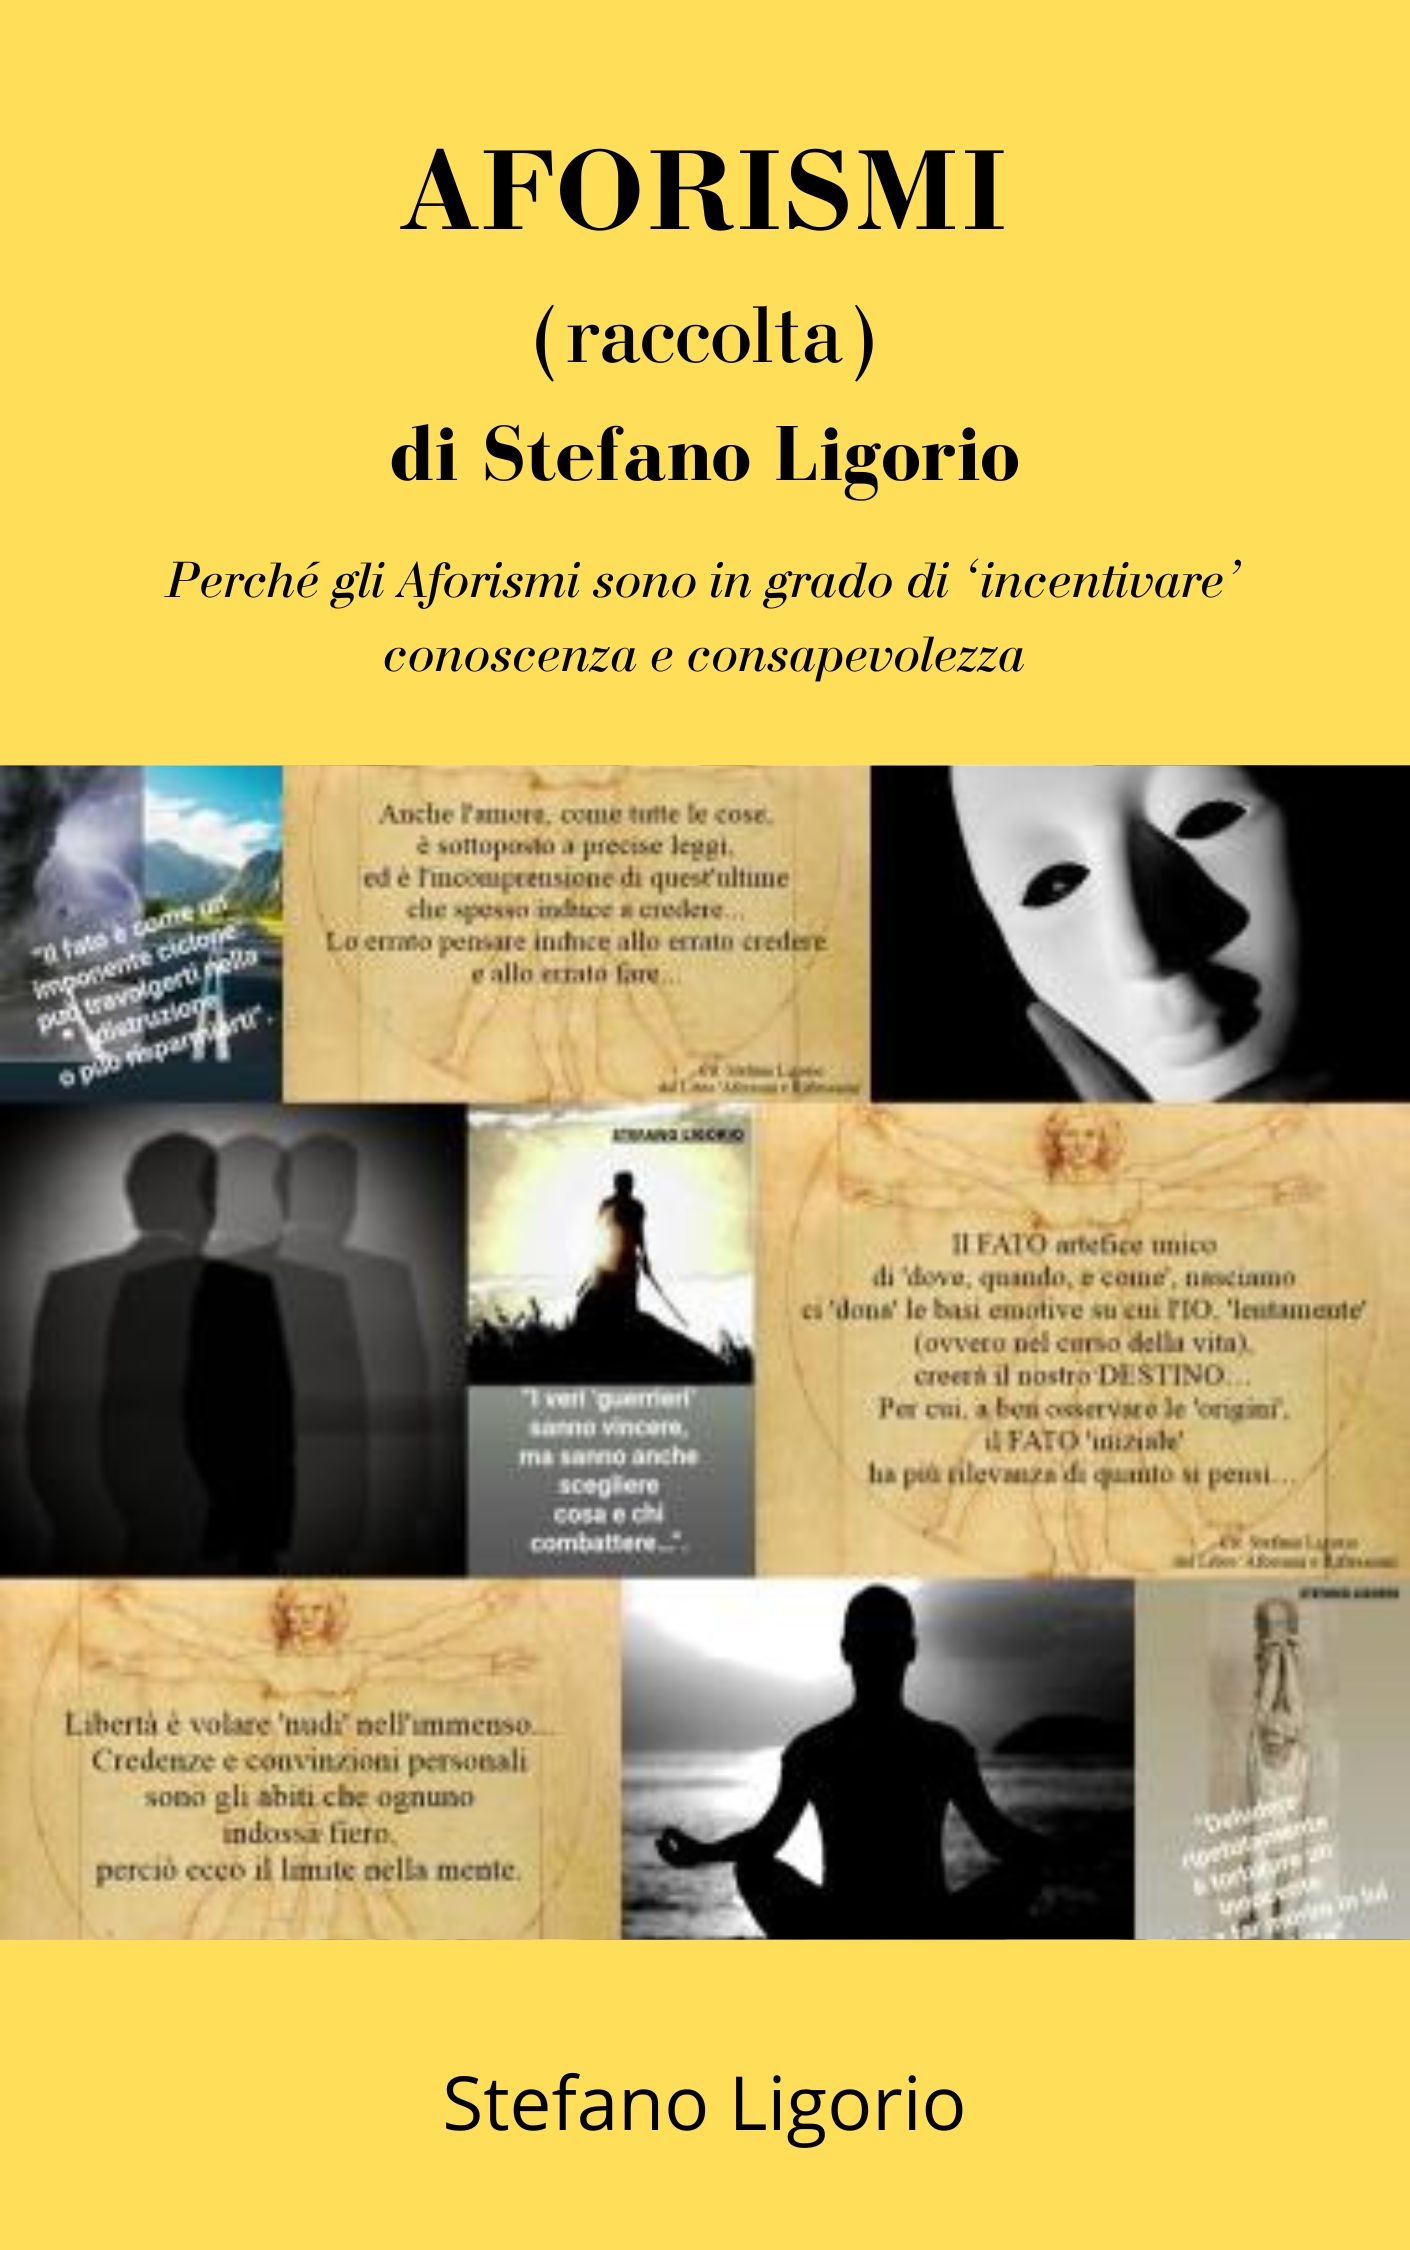 Il libro di Stefano Ligorio: ‘AFORISMI (raccolta) di Stefano Ligorio‘.